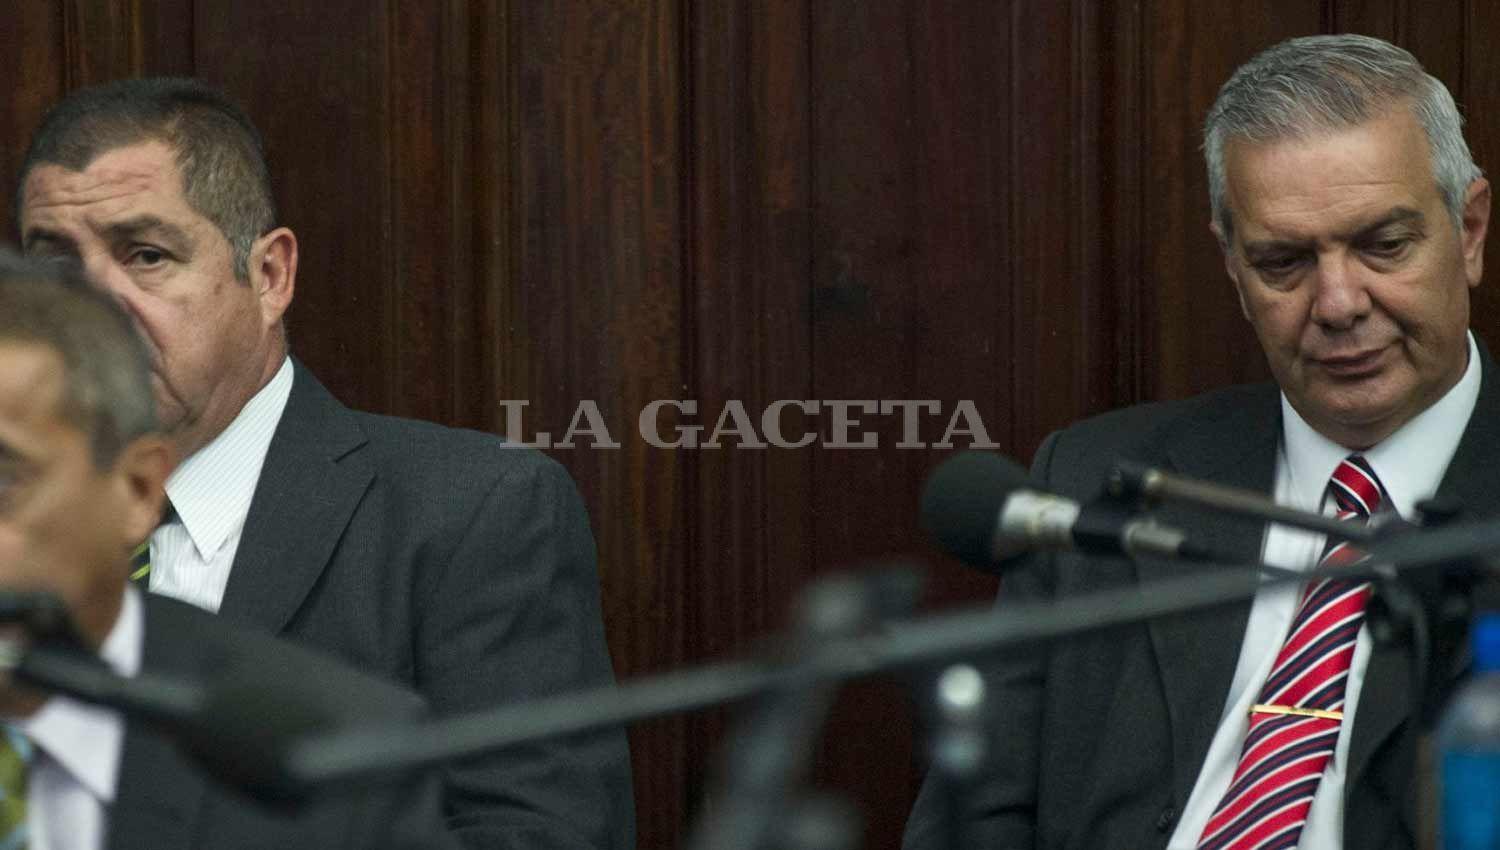 Los imputados Nicolás Barrera y Hugo Sánchez. LA GACETA / FOTO DE JORGE OLMOS SGROSSO